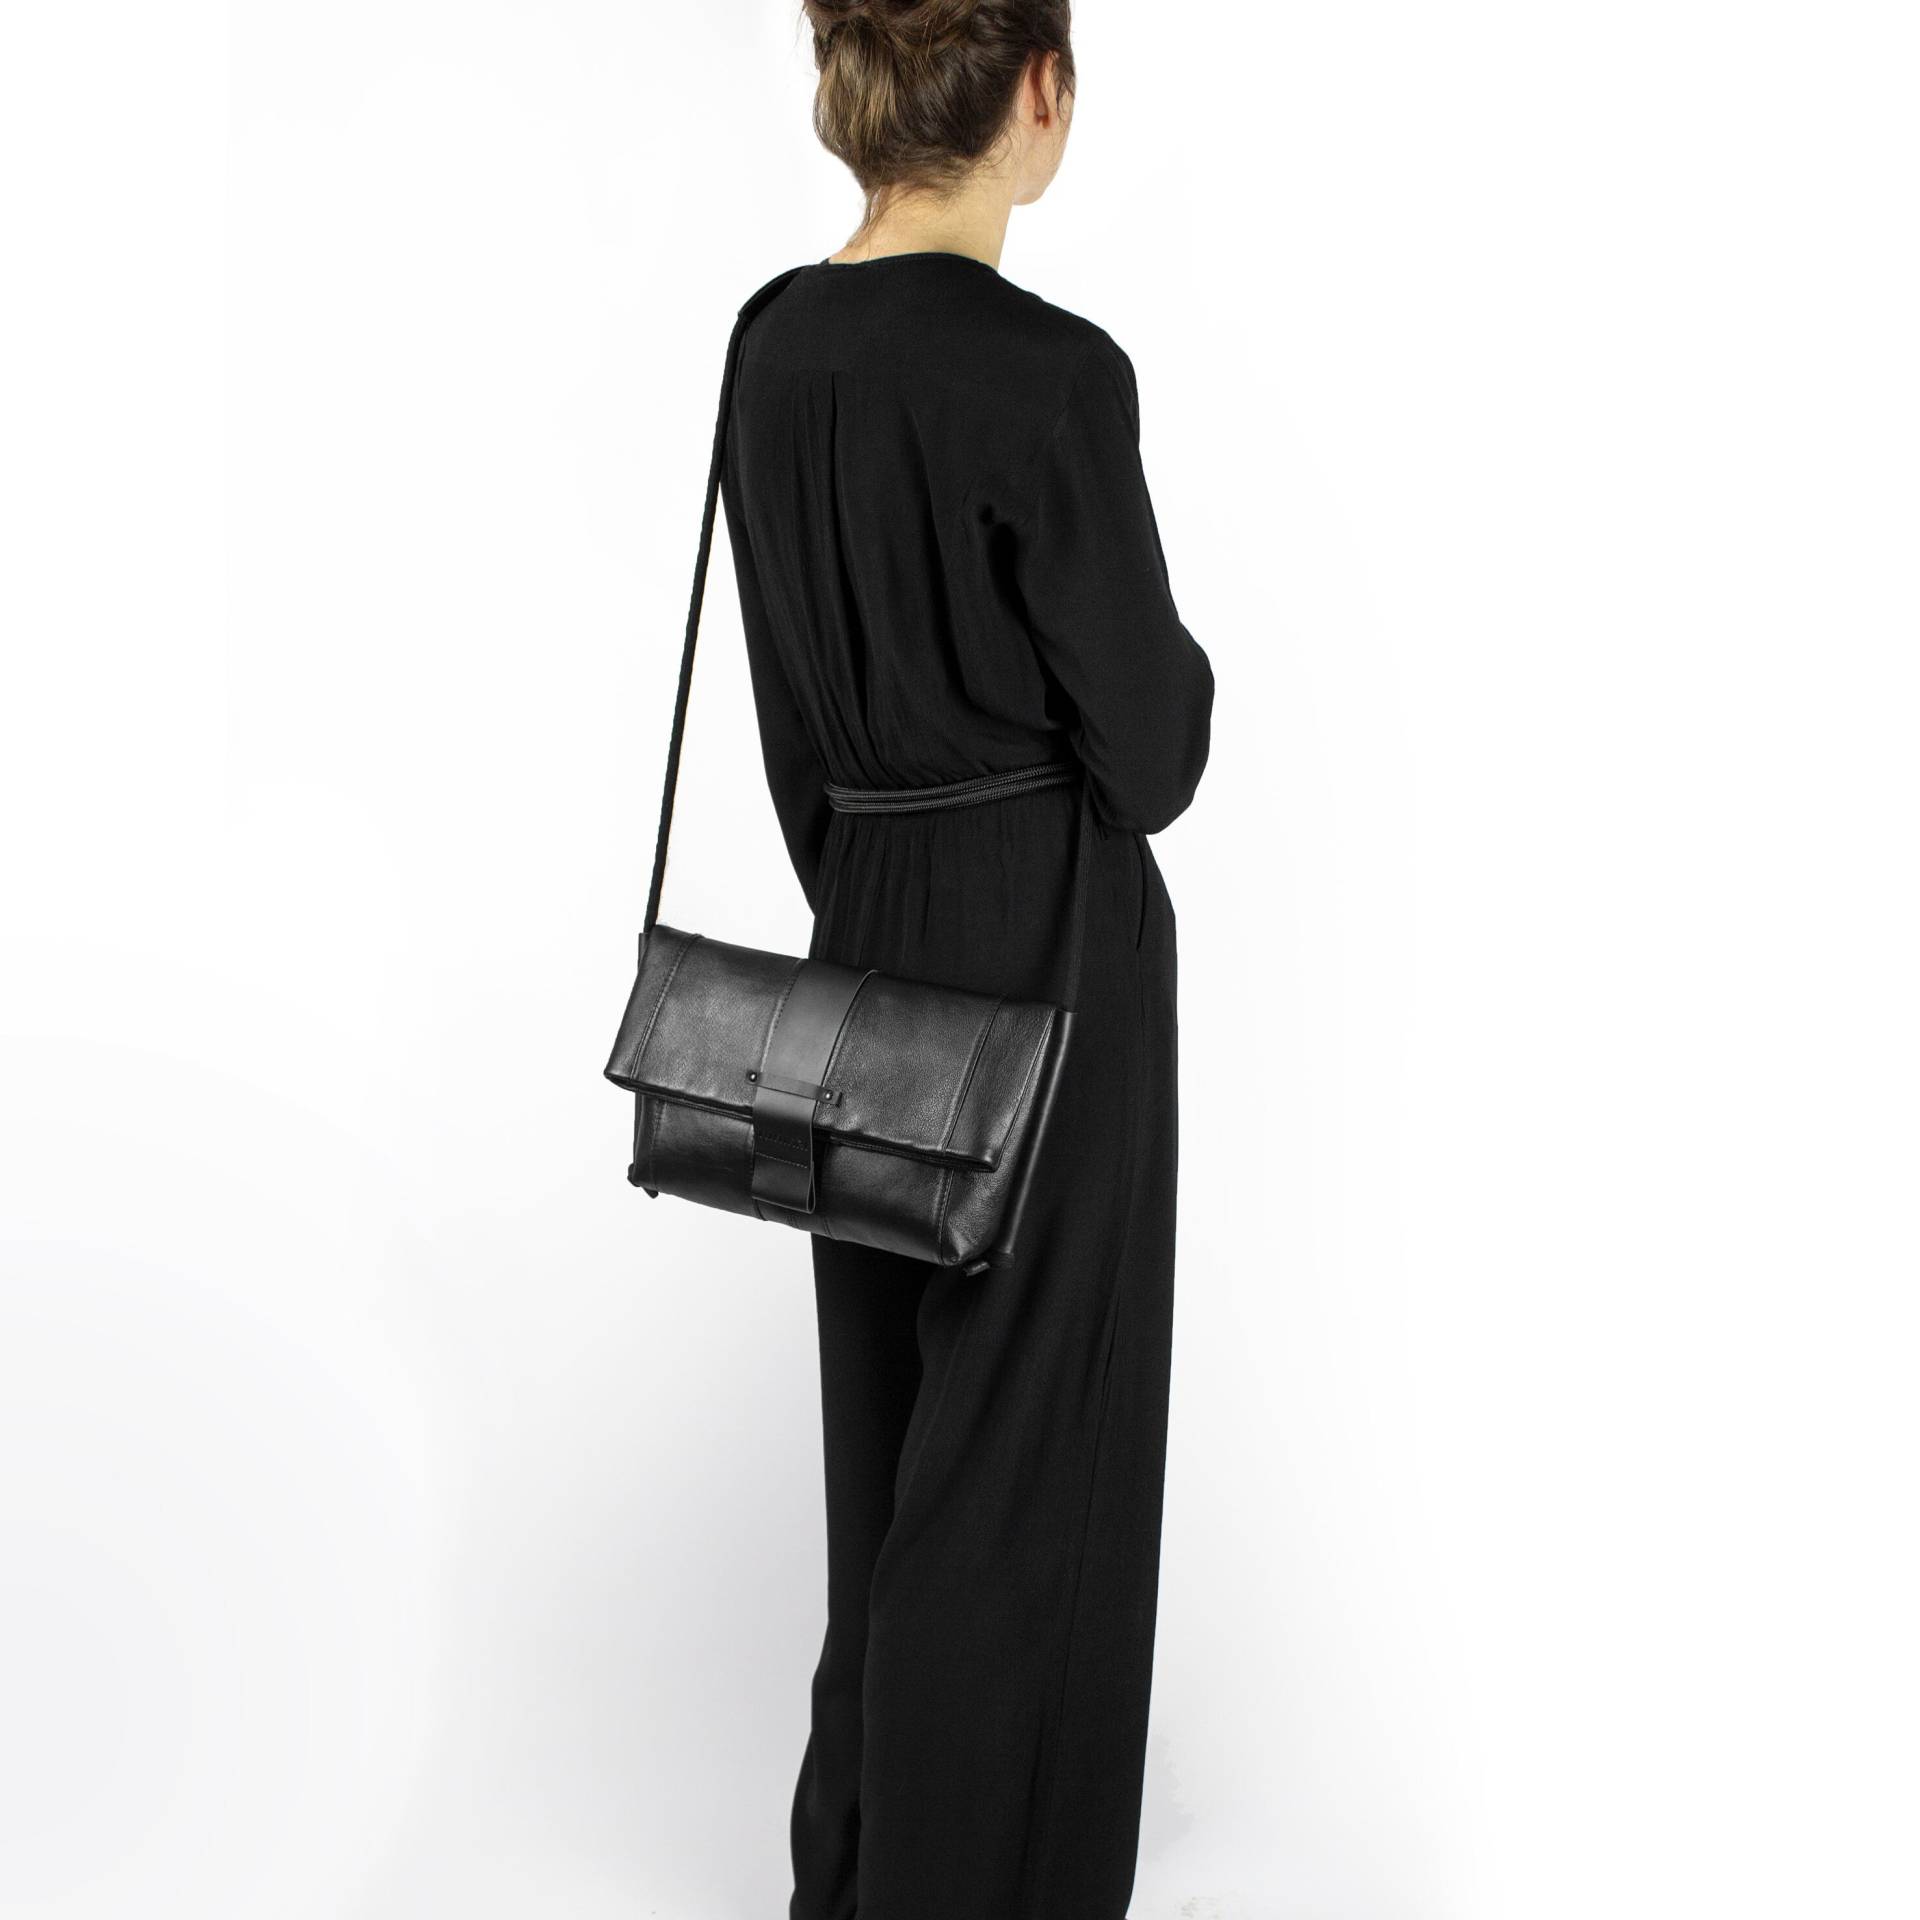 Designer Tasche, Schwarze Leder Umhängetasche, Alltag Tragen Foldover Upcycled Mit Seil Griff von MIMIKRIDesign